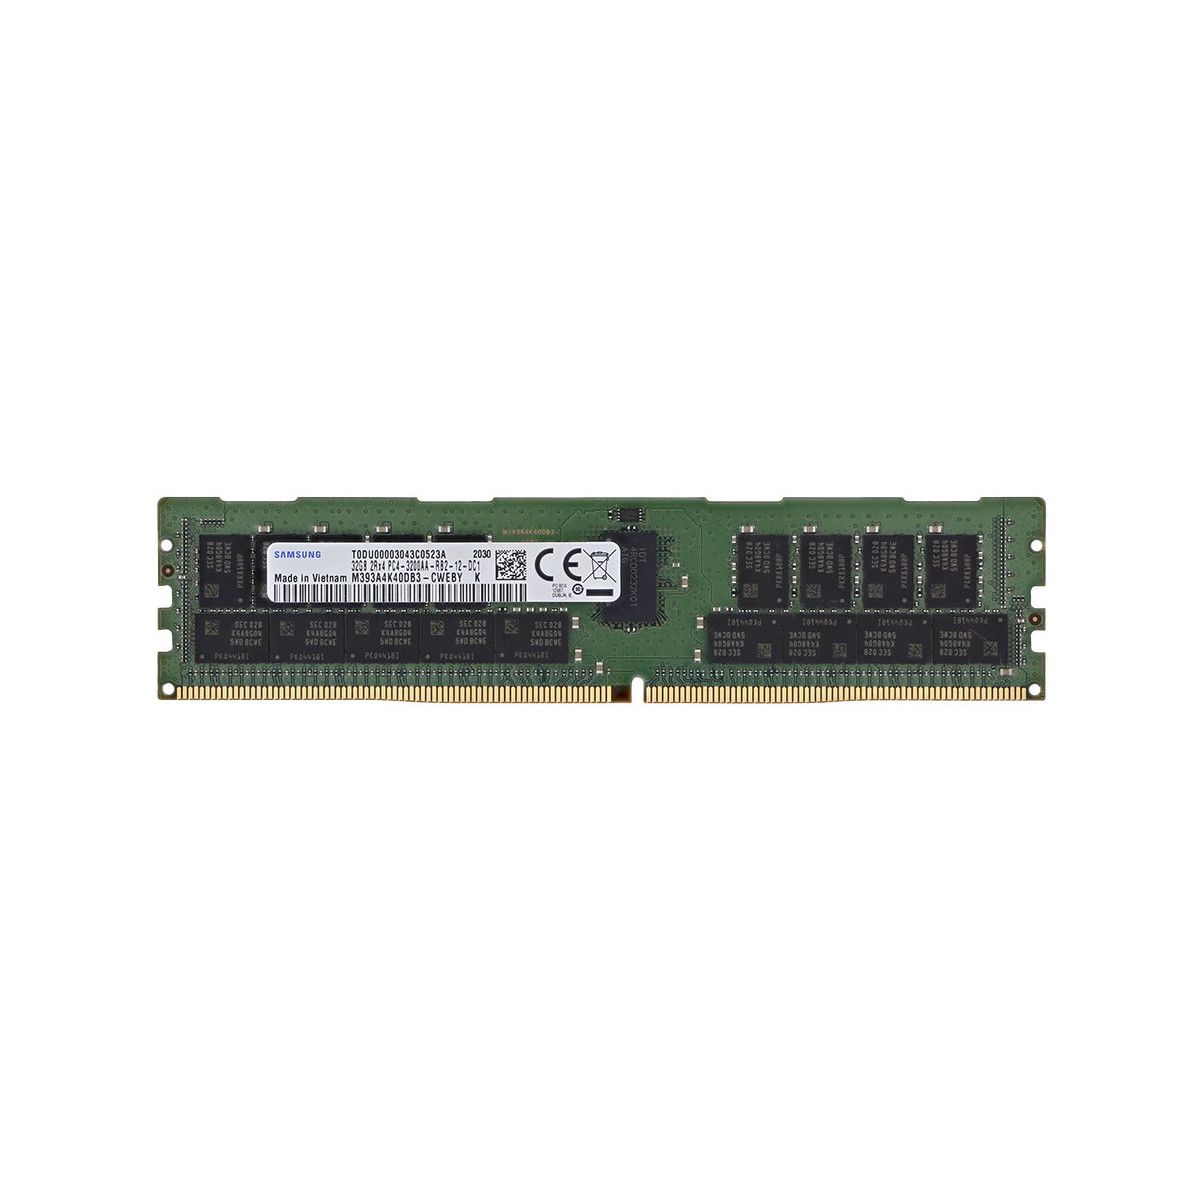 P06033‐B21-MS - Memstar 1x 32GB DDR4-3200 RDIMM PC4-25600R - Mem-star compatibel OEM geheugen 1 - Memstar 